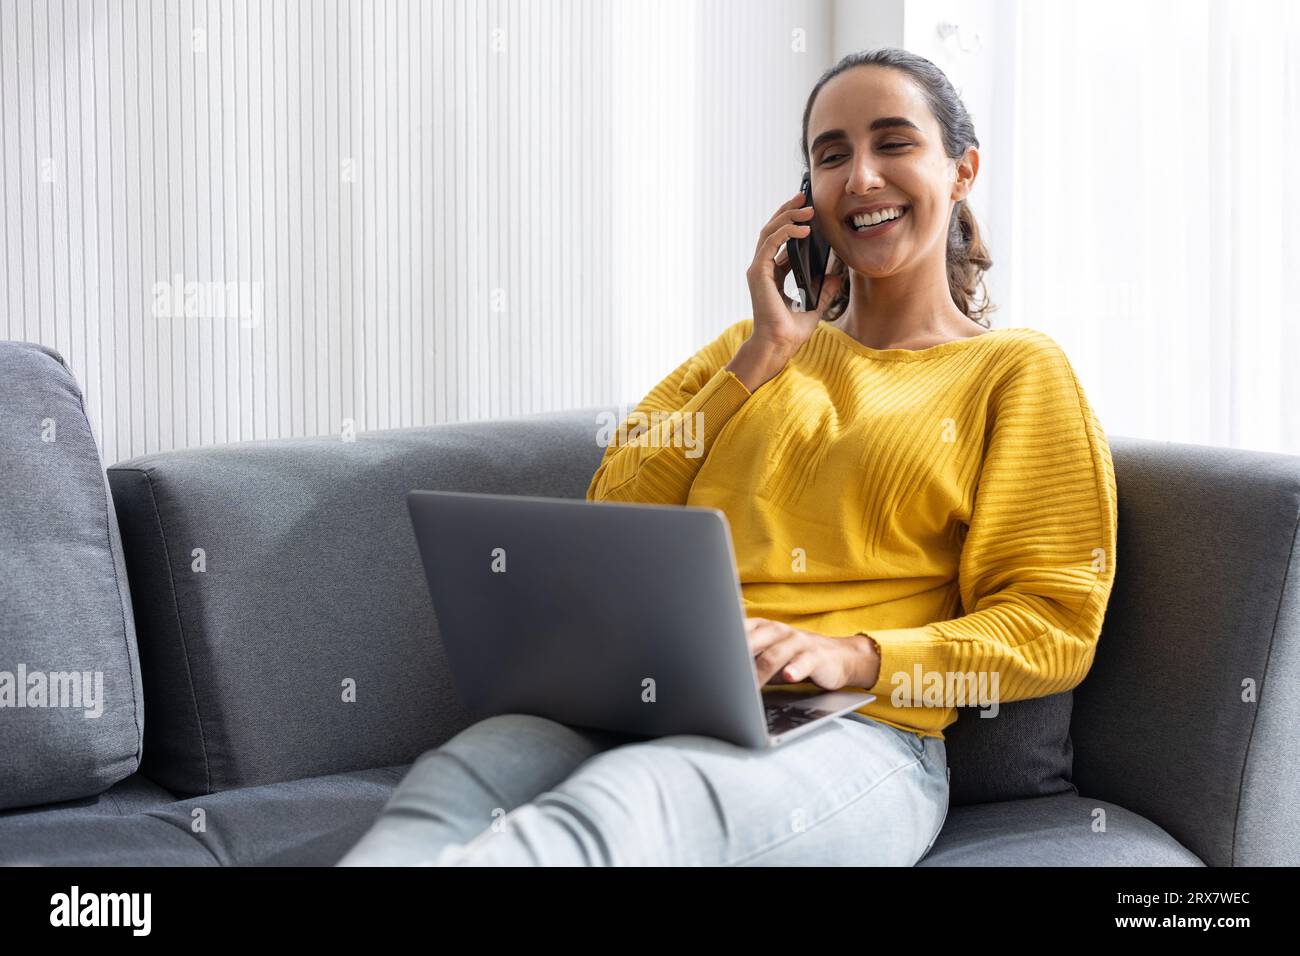 Adolescente universitaria o donna d'affari indiana ispanica seduta rilassarsi sul divano felice di divertirsi con i dispositivi tecnologici moderni che lavorano a casa Foto Stock